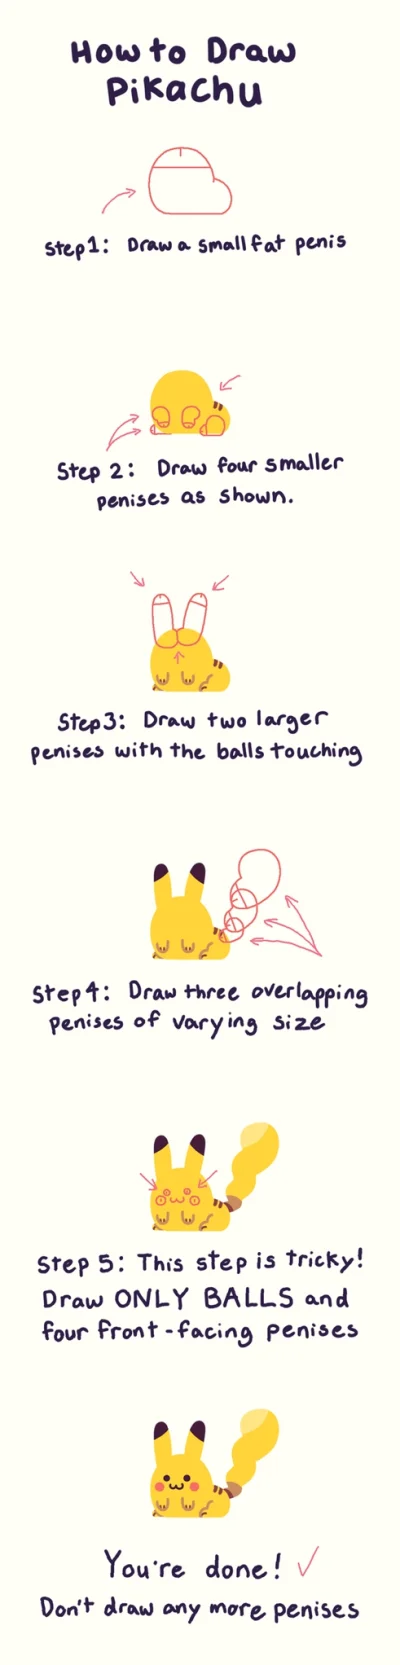 duch_revolucyji - Jak penisami narysować Pikachu?

#heheszki #humorobrazkowy